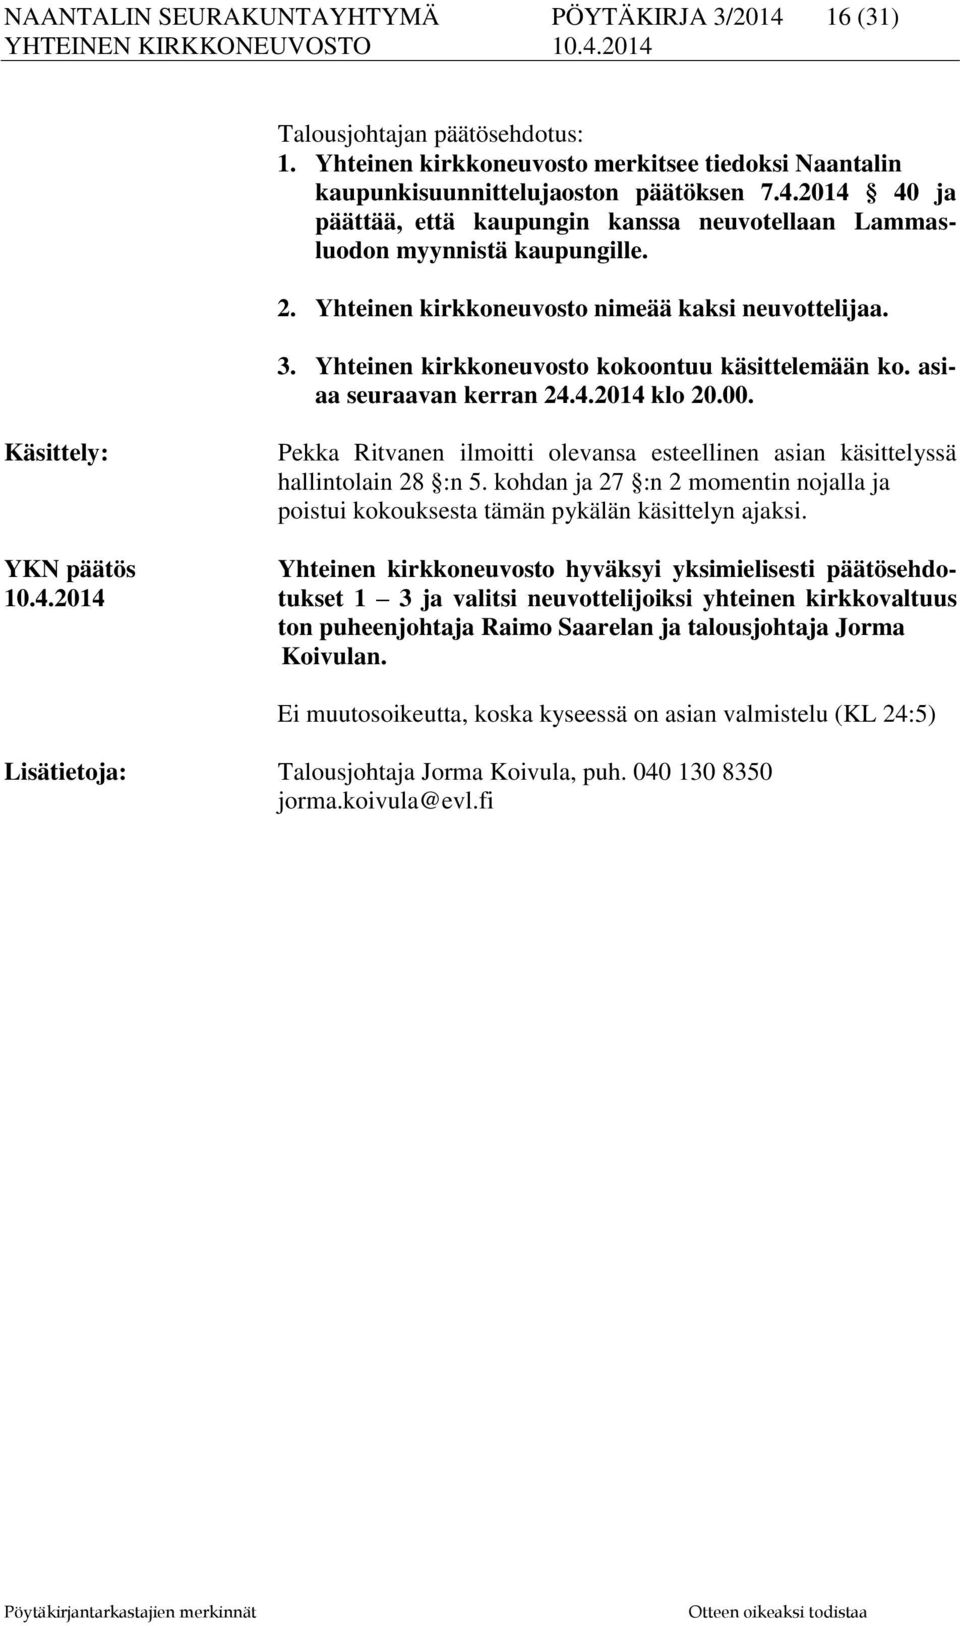 Käsittely: Pekka Ritvanen ilmoitti olevansa esteellinen asian käsittelyssä hallintolain 28 :n 5. kohdan ja 27 :n 2 momentin nojalla ja poistui kokouksesta tämän pykälän käsittelyn ajaksi.